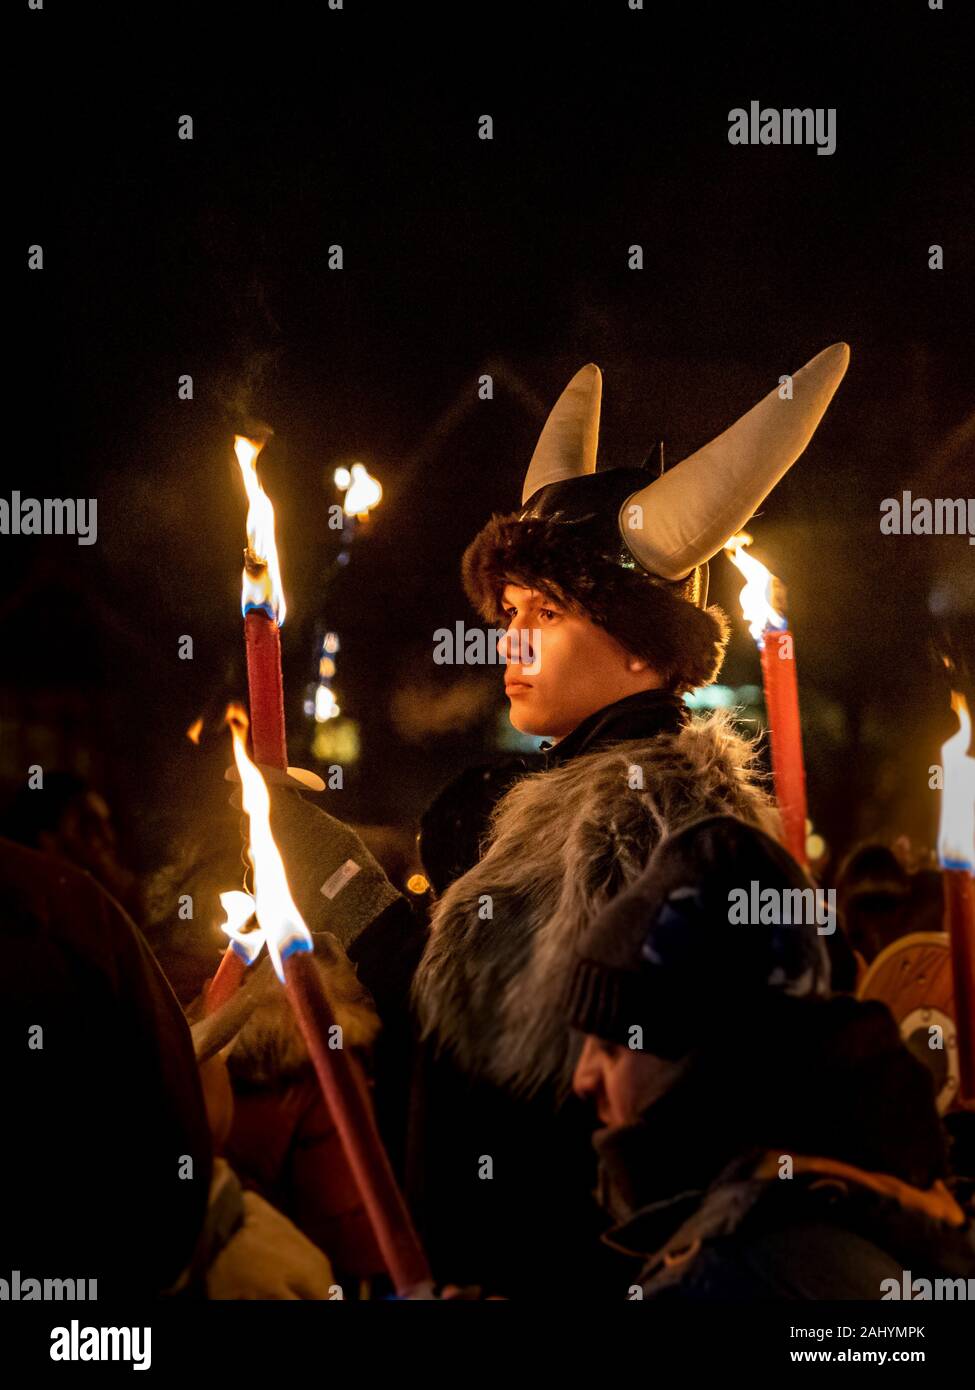 Flamborough Fête du feu. New Year's Eve 2019 célébrant le village viking de l'histoire. Avec la Procession aux flambeaux, Boules de Flamborough et la gravure d'un Longboat Viking sur la place du village. Banque D'Images